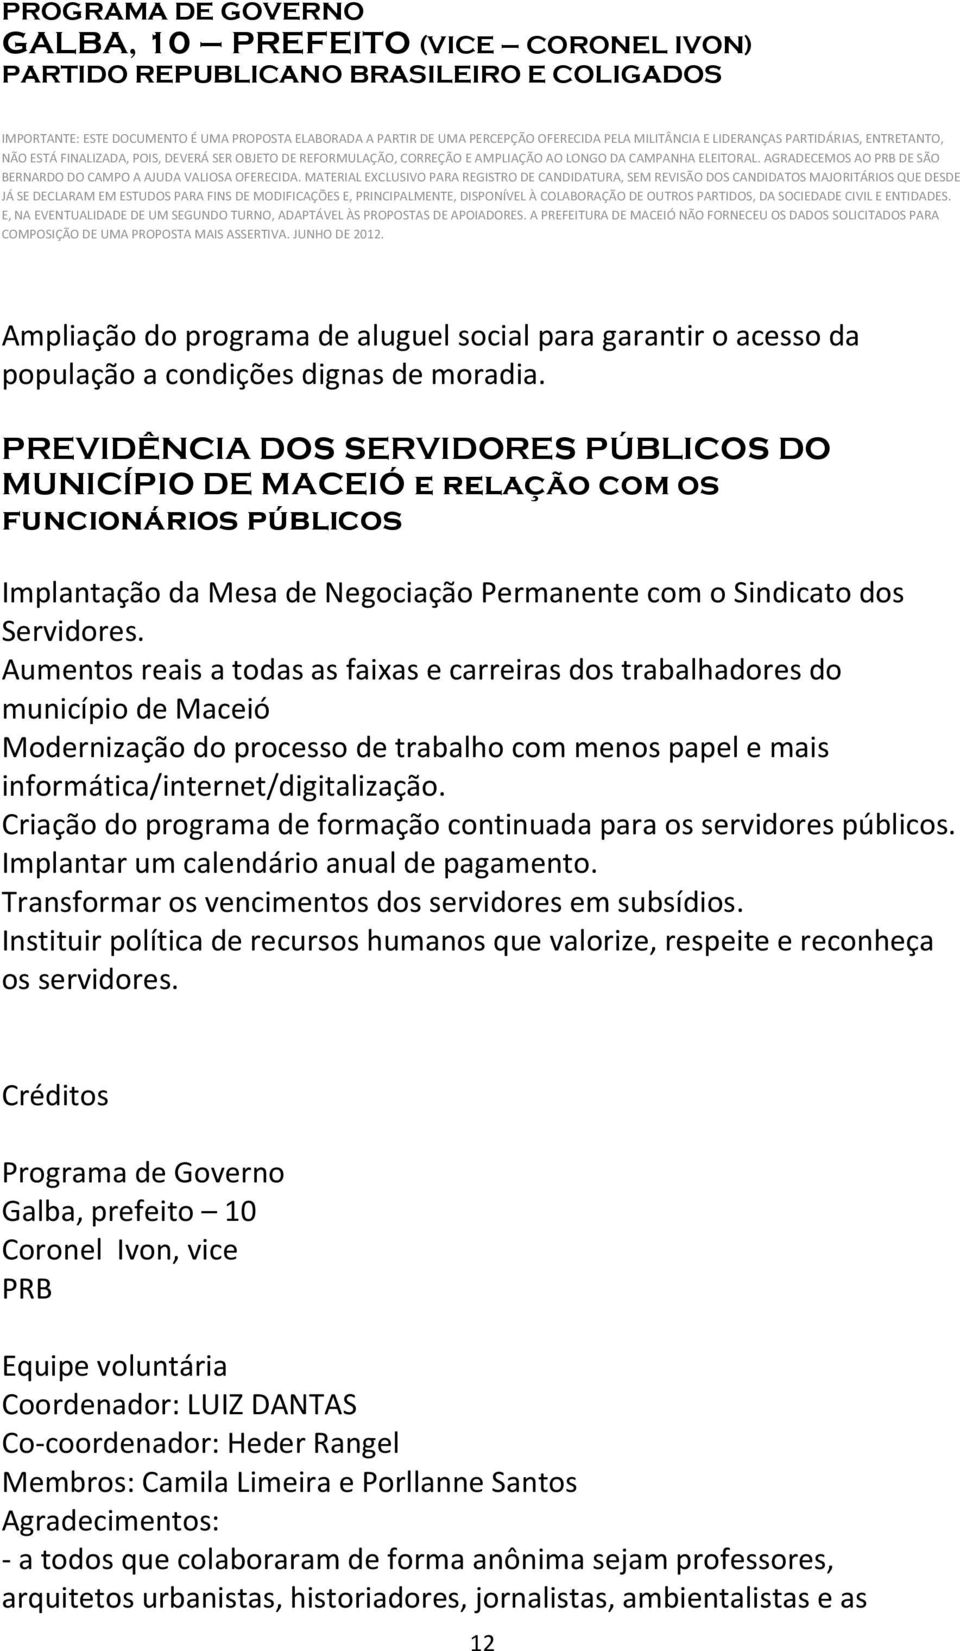 Aumentos reais a todas as faixas e carreiras dos trabalhadores do município de Maceió Modernização do processo de trabalho com menos papel e mais informática/internet/digitalização.